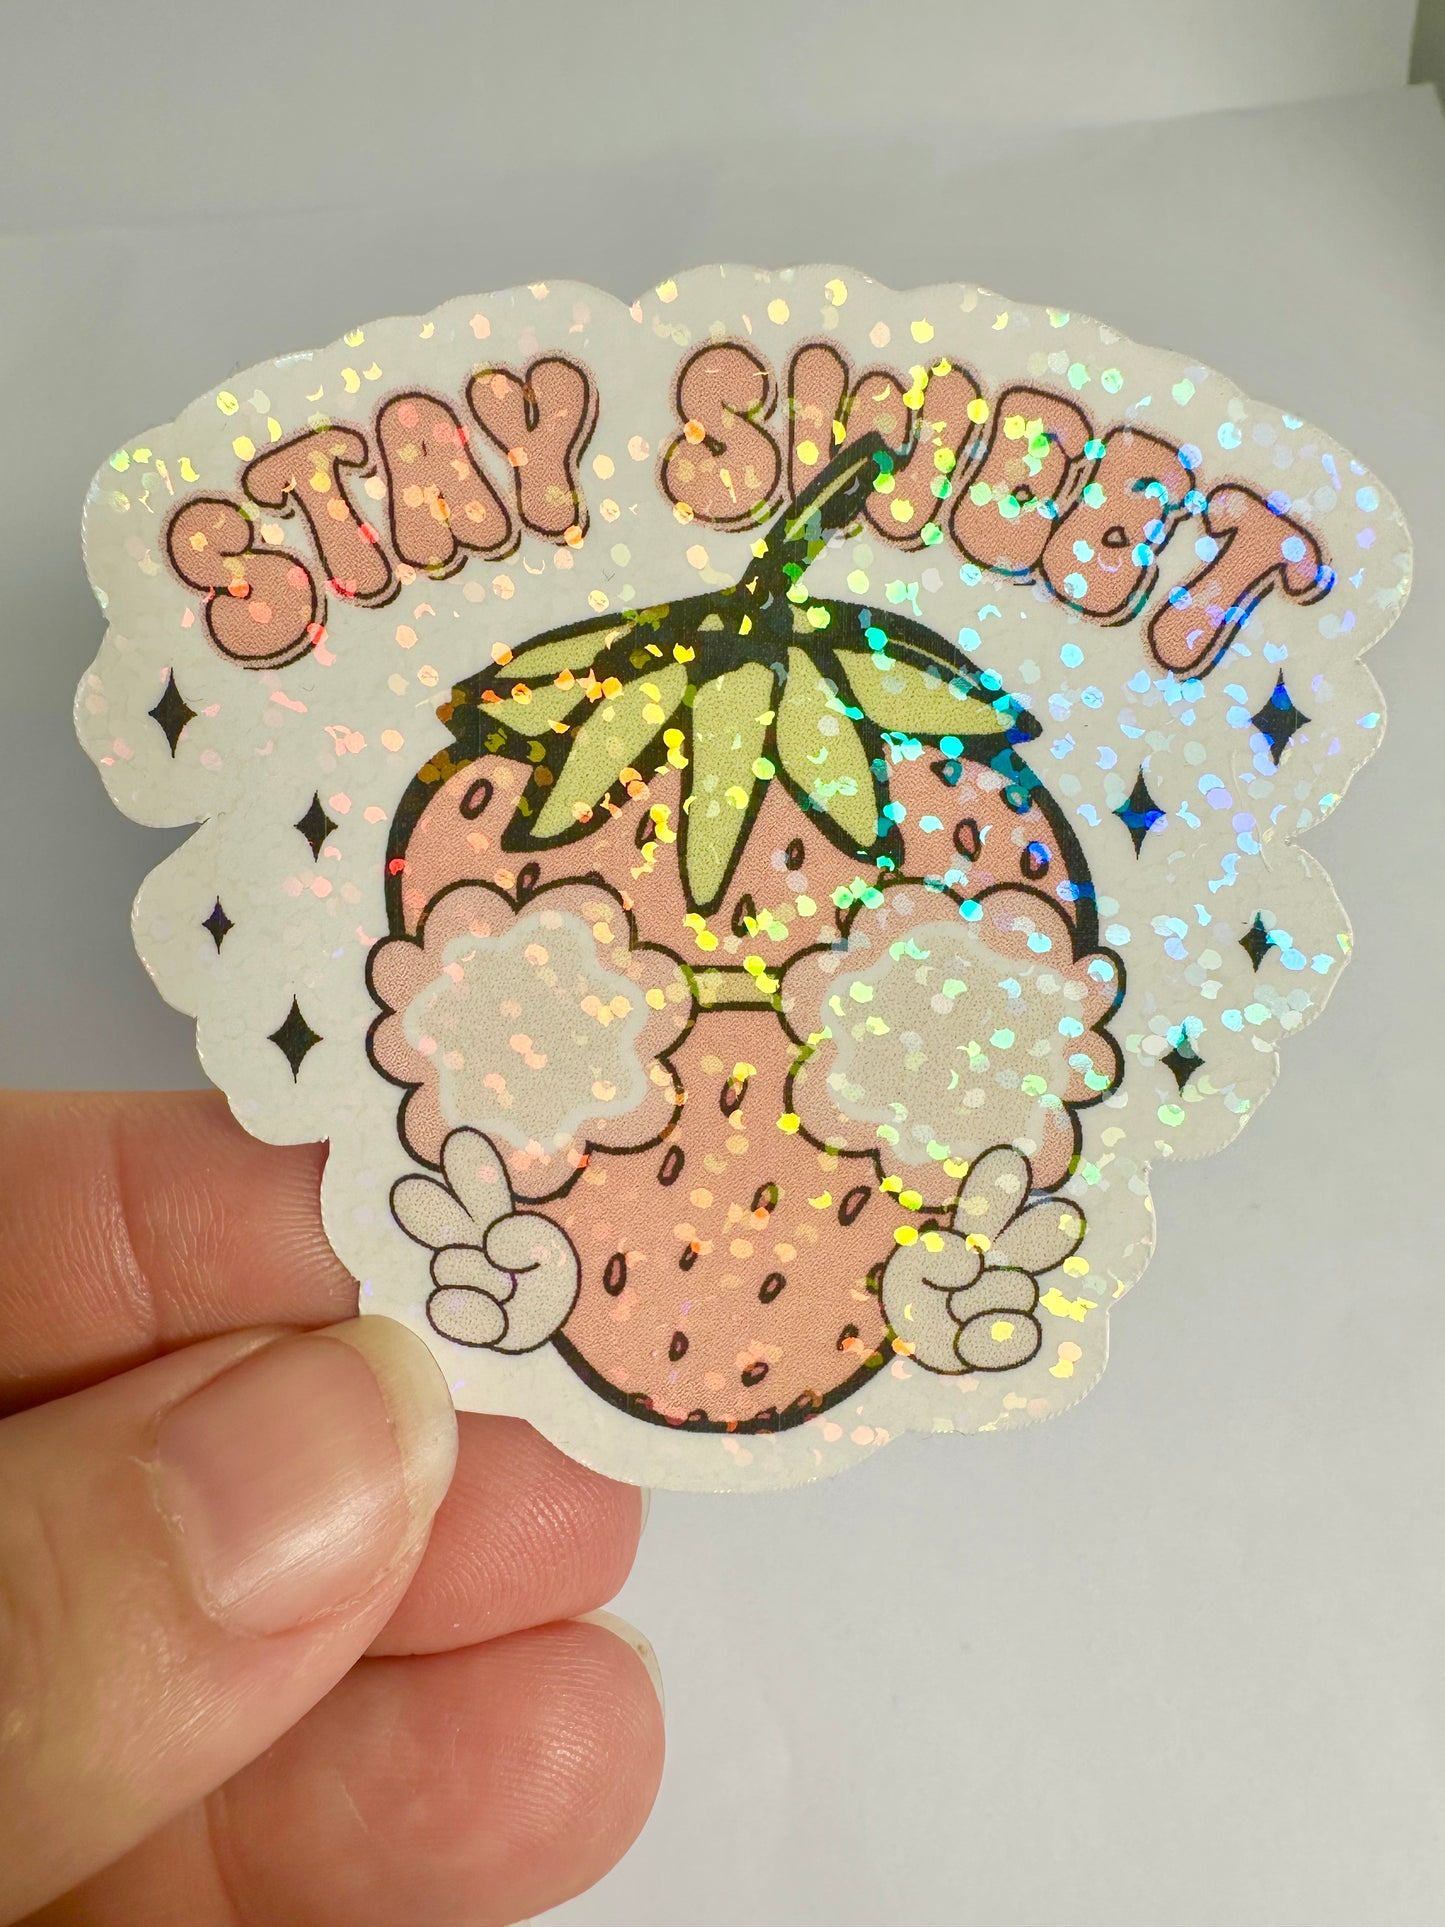 Stay Sweet Sticker